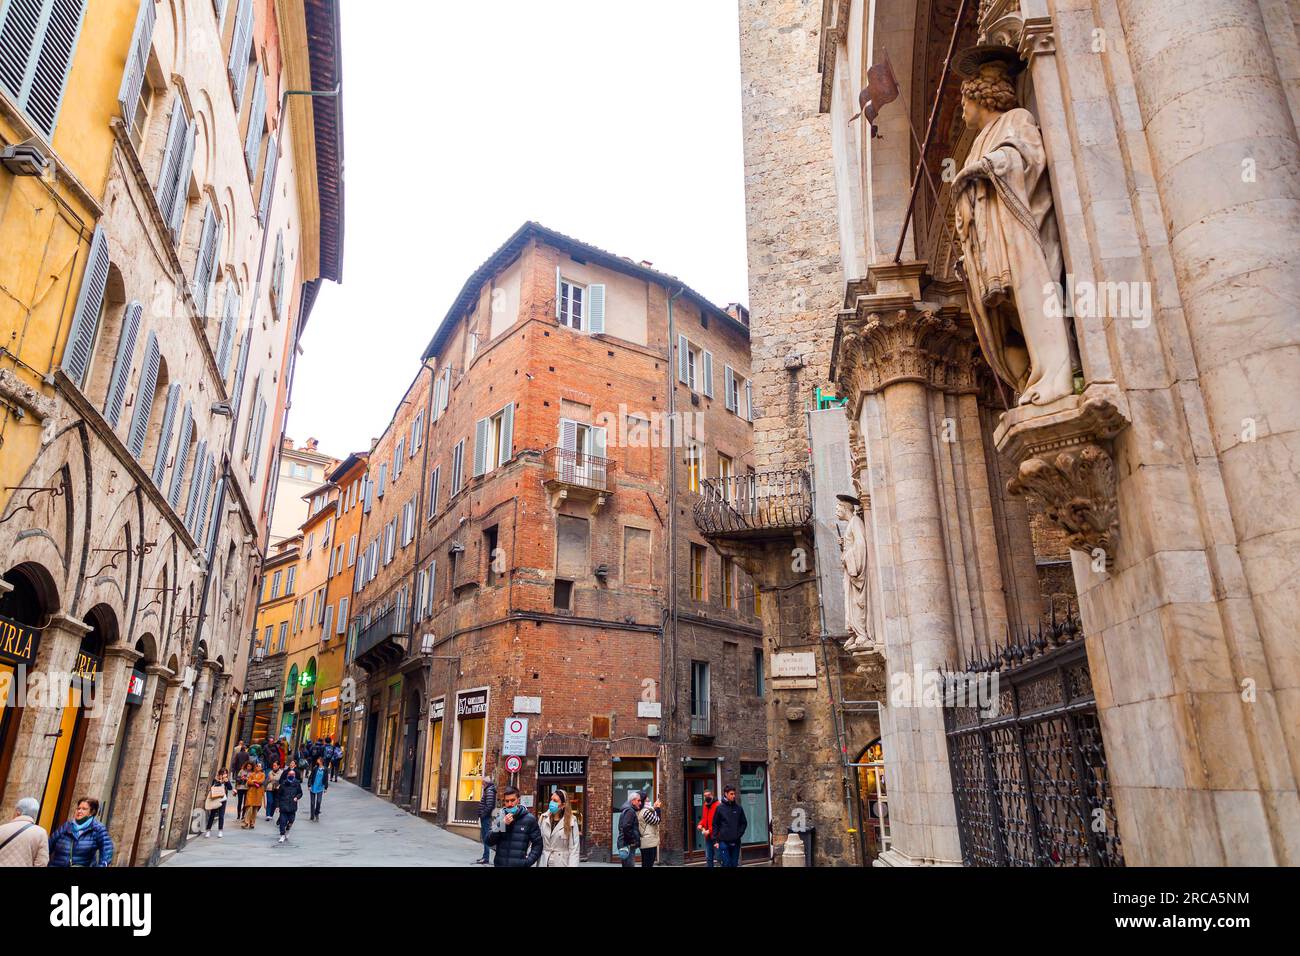 Siena, Italien - 7. April 2022: Allgemeine Architektur und Blick auf die Straße aus der historischen italienischen Stadt Siena in der Toskana. Stockfoto